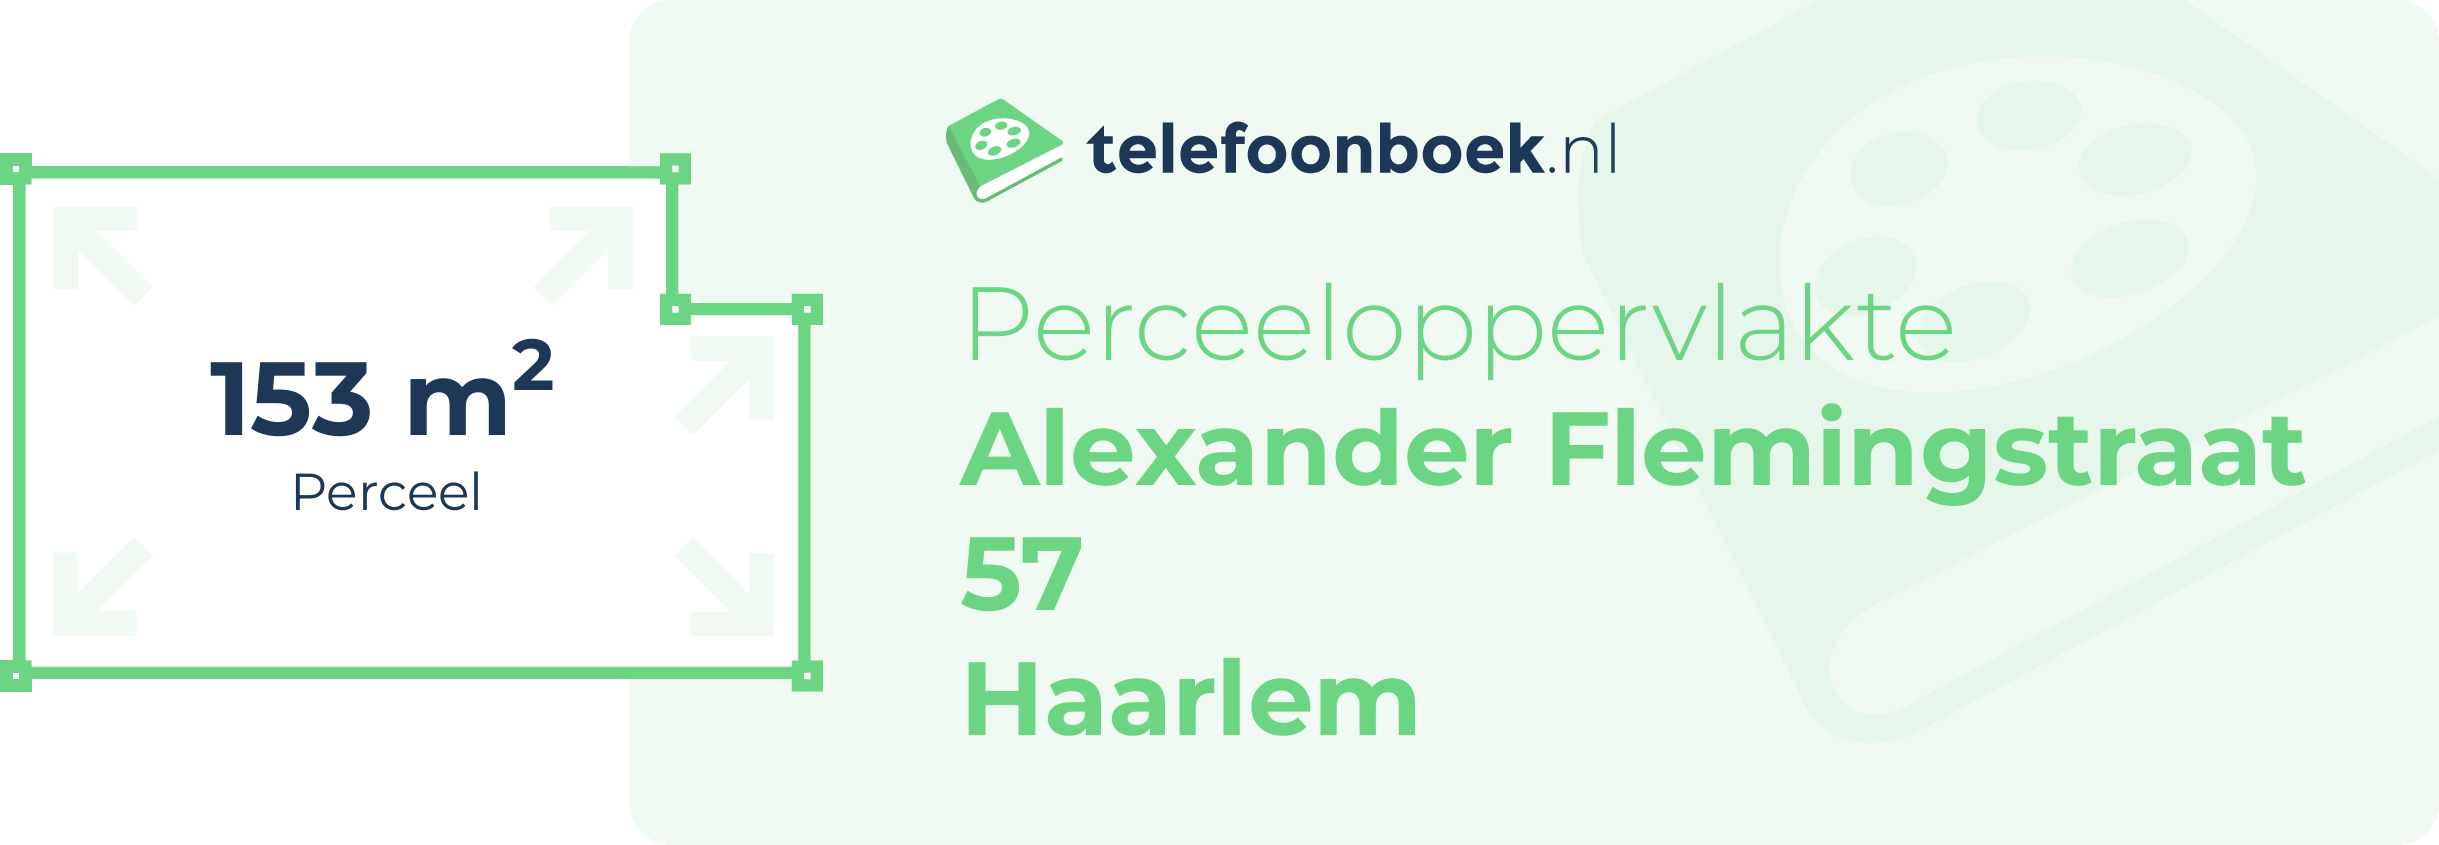 Perceeloppervlakte Alexander Flemingstraat 57 Haarlem